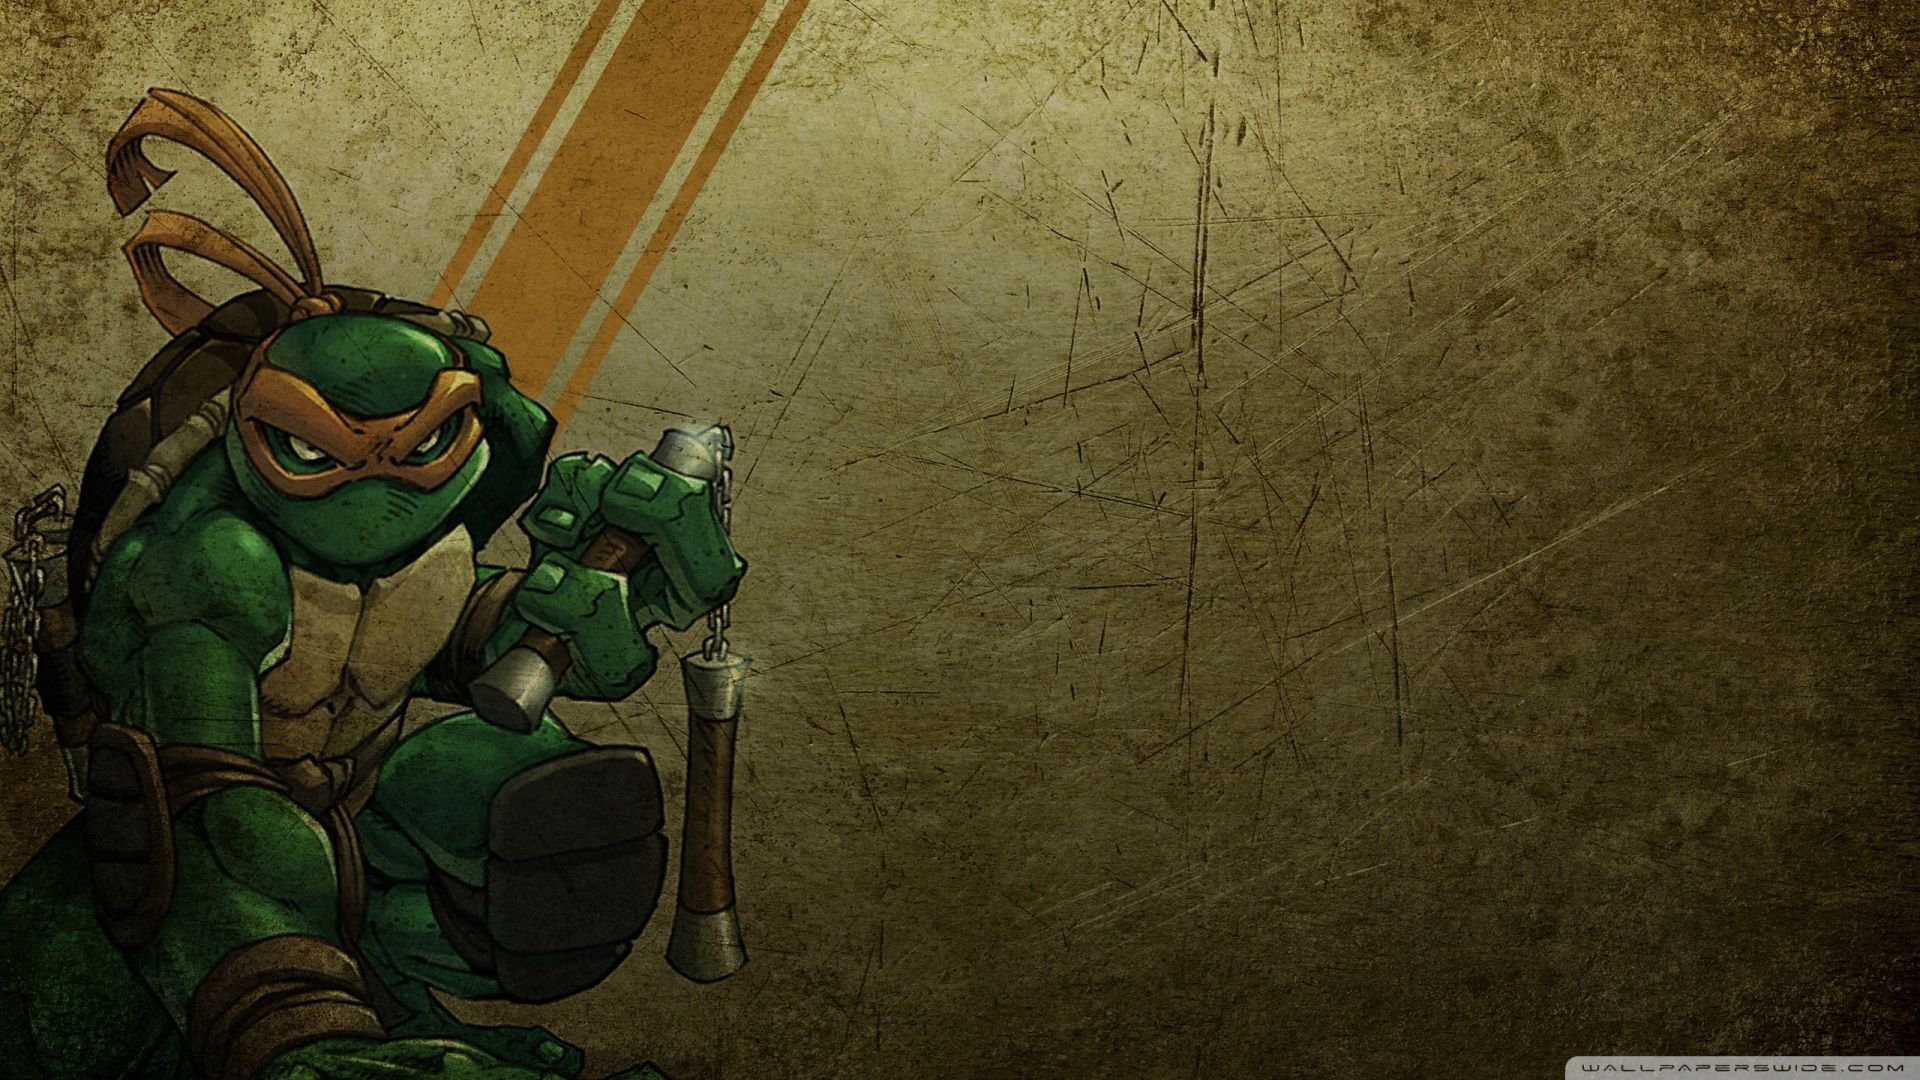 Michelangelo teenage mutant ninja turtles picture, michelangelo